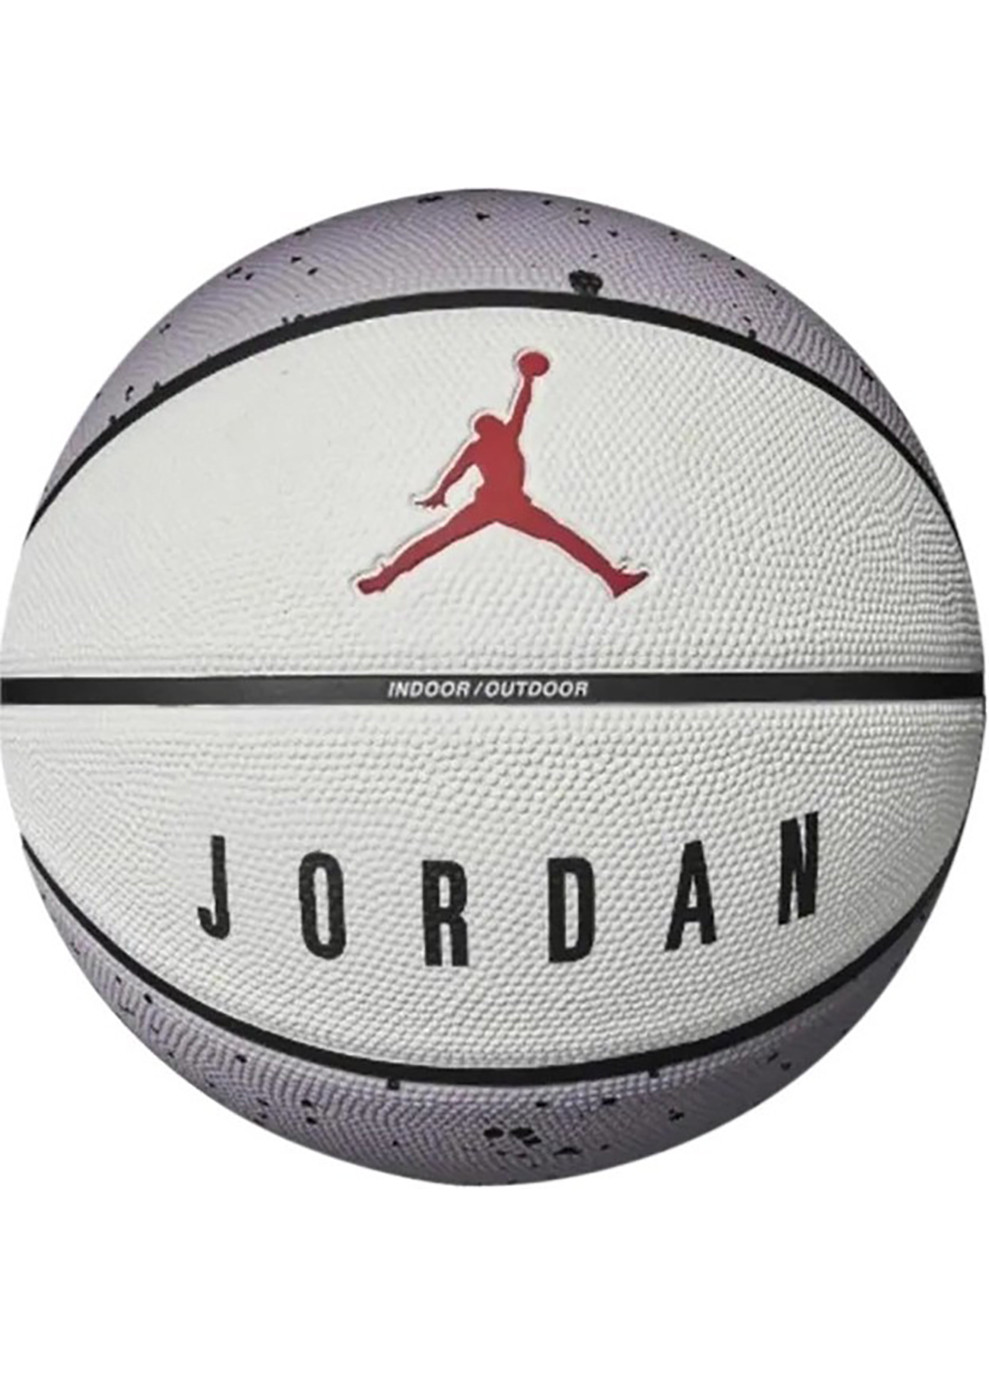 Мяч баскетбольный Nike PLAYGROUND 2.0 8P DEFLATED CEMENT GREY/WHITE/BLACK/FIRE RED size 5 J.100.8255.049.05 5 Jordan (262450885)